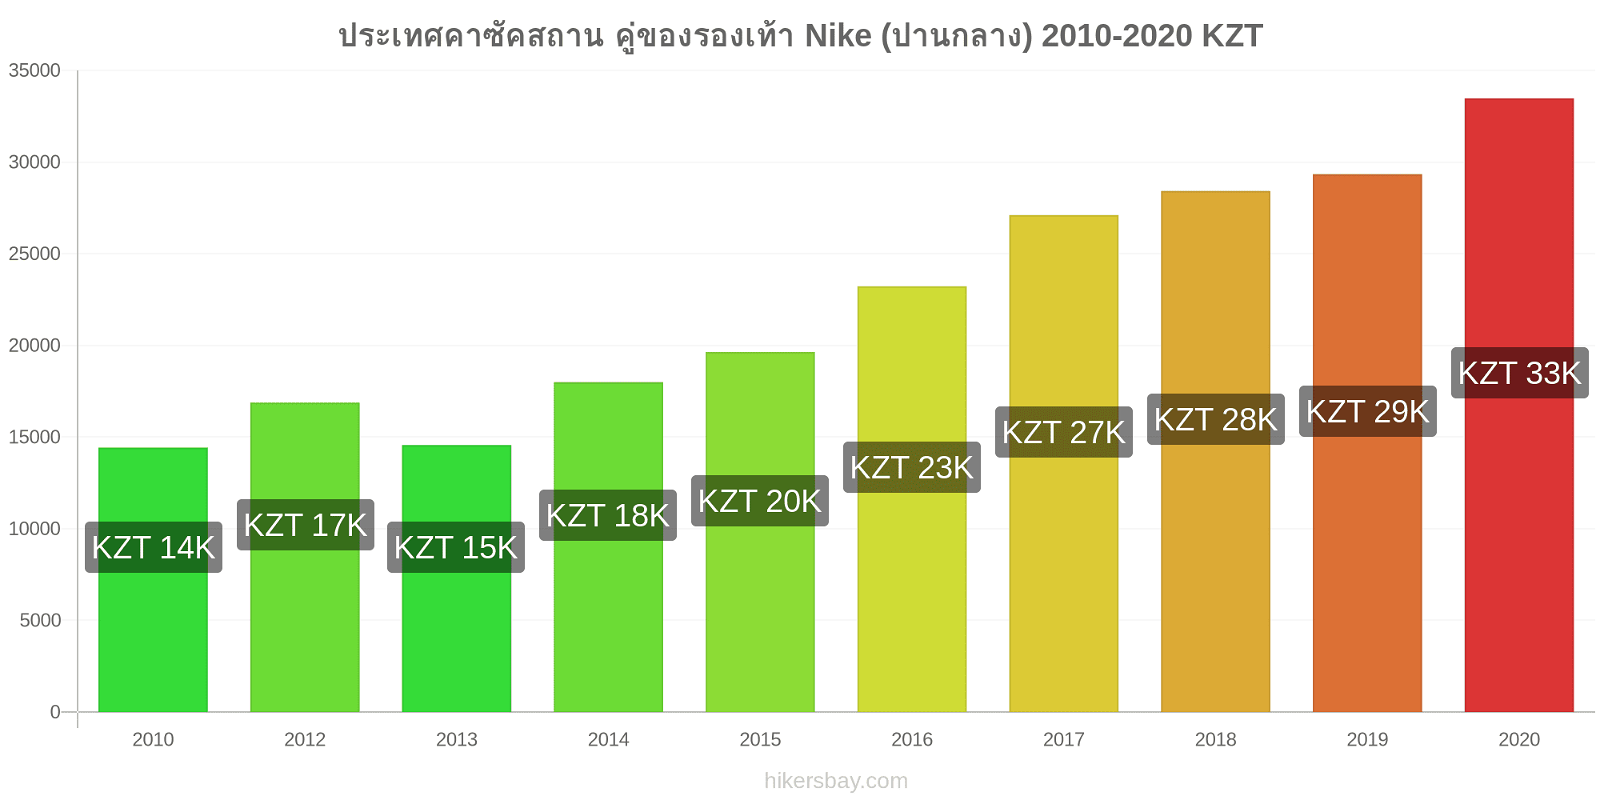 ประเทศคาซัคสถาน การเปลี่ยนแปลงราคา คู่ของรองเท้า Nike (ปานกลาง) hikersbay.com